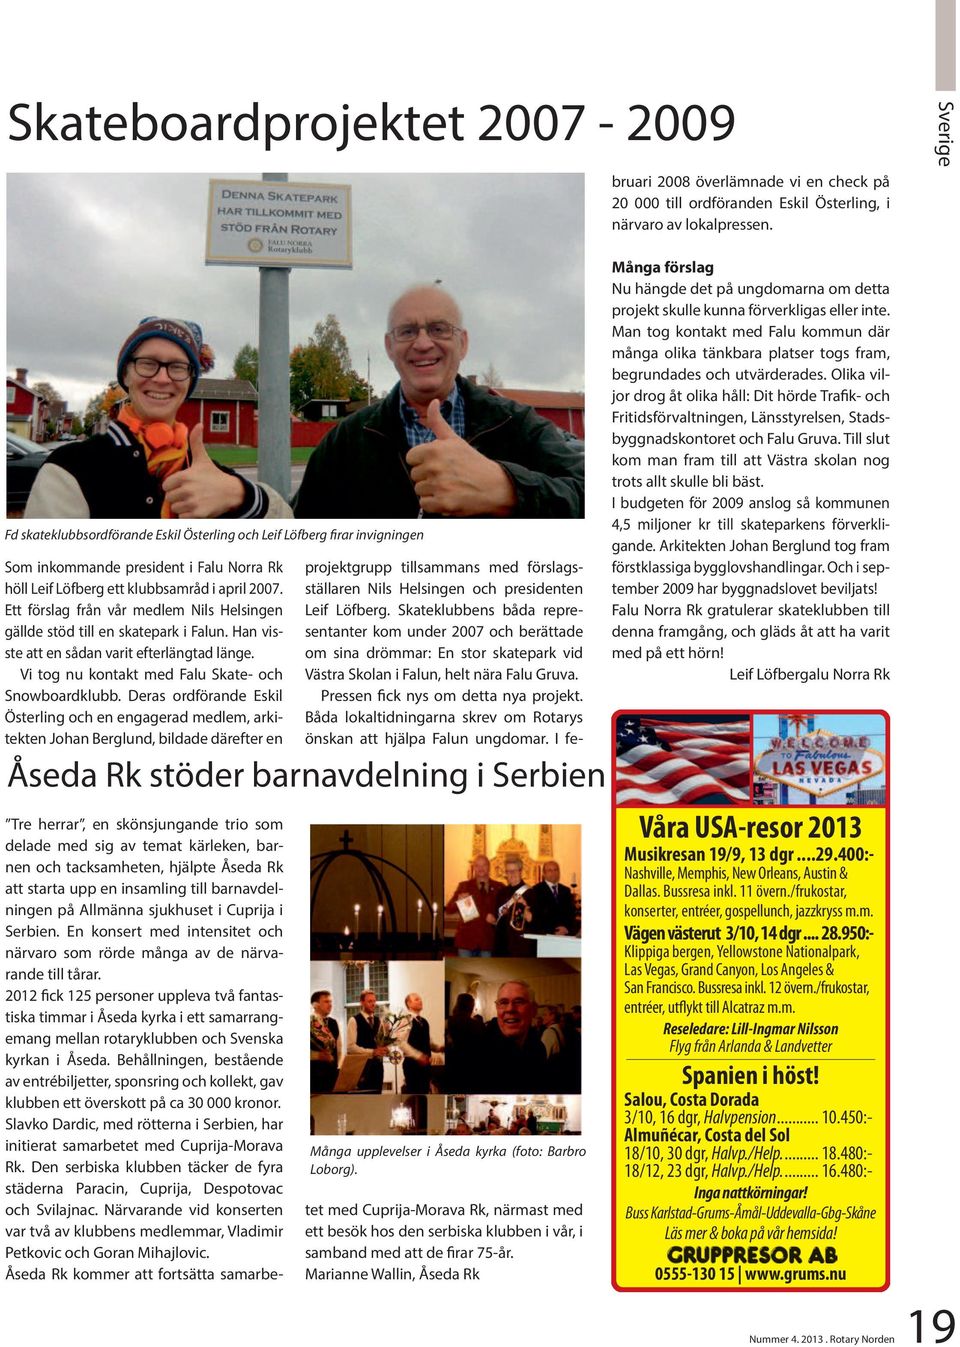 Båda lokaltidningarna skrev om Rotarys önskan att hjälpa Falun ungdomar. I februari 2008 överlämnade vi en check på 20 000 till ordföranden Eskil Österling, i närvaro av lokalpressen.